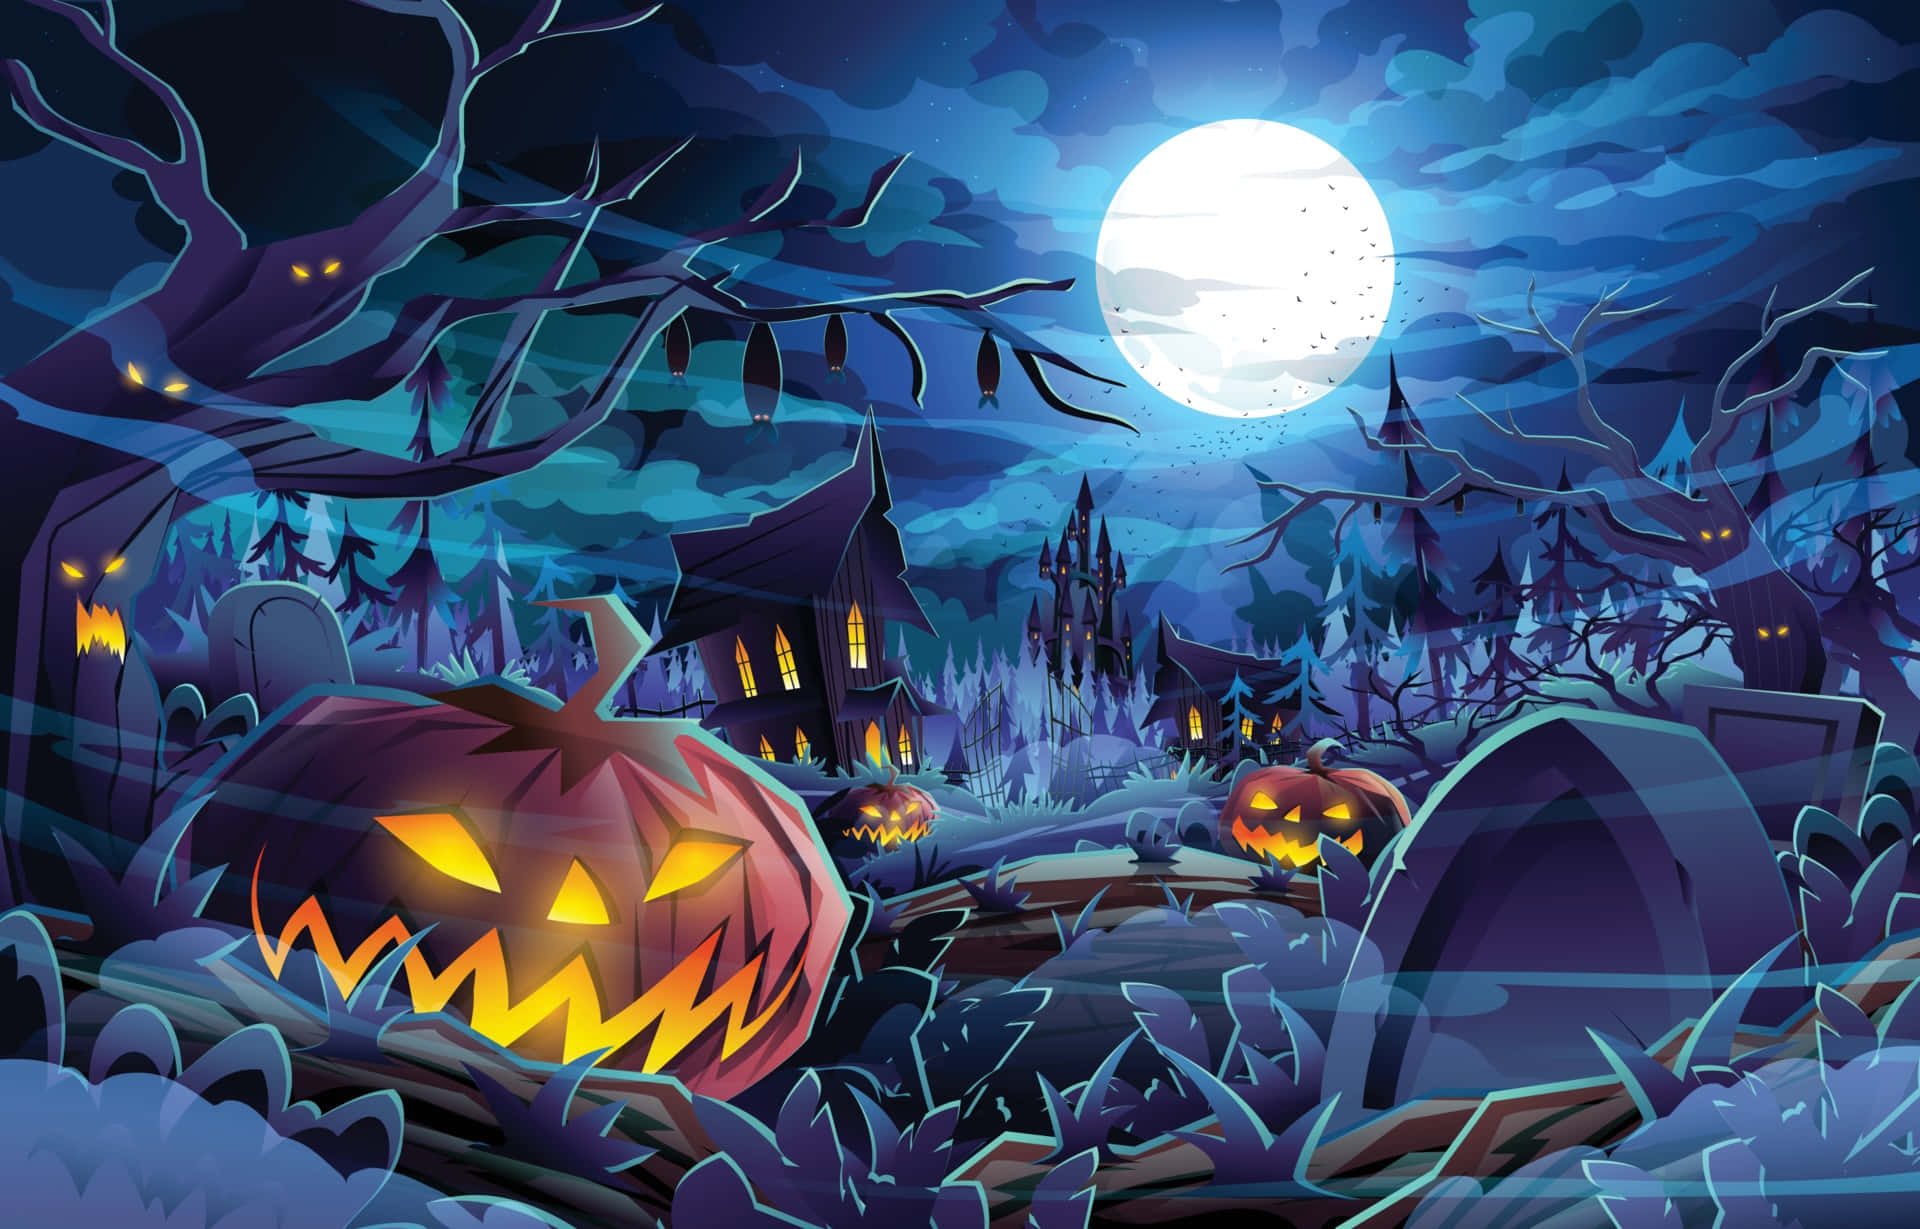 Süßesoder Saures? Mach Dich Bereit Für Die Gruseligste Nacht Des Jahres Mit Diesem Halloween-profilbild!